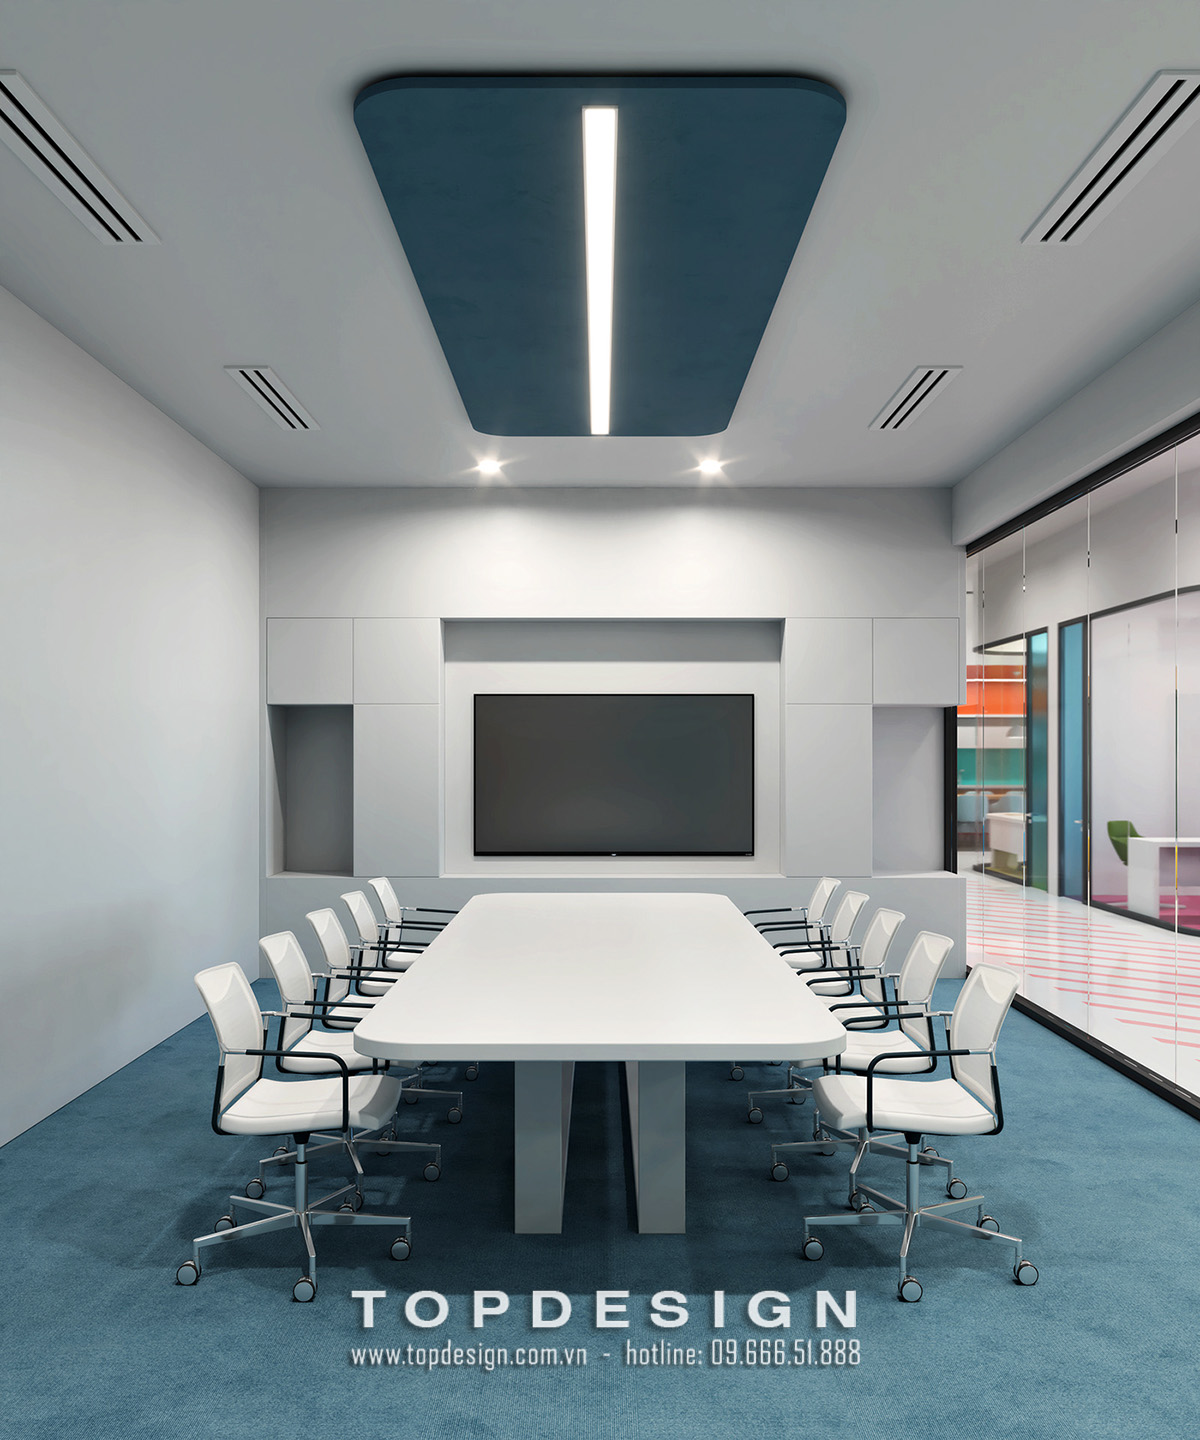 7.Mẫu thiết kế nội thất văn phòng IT 800m2 hiện đại, tinh tế_TOPDESIGN